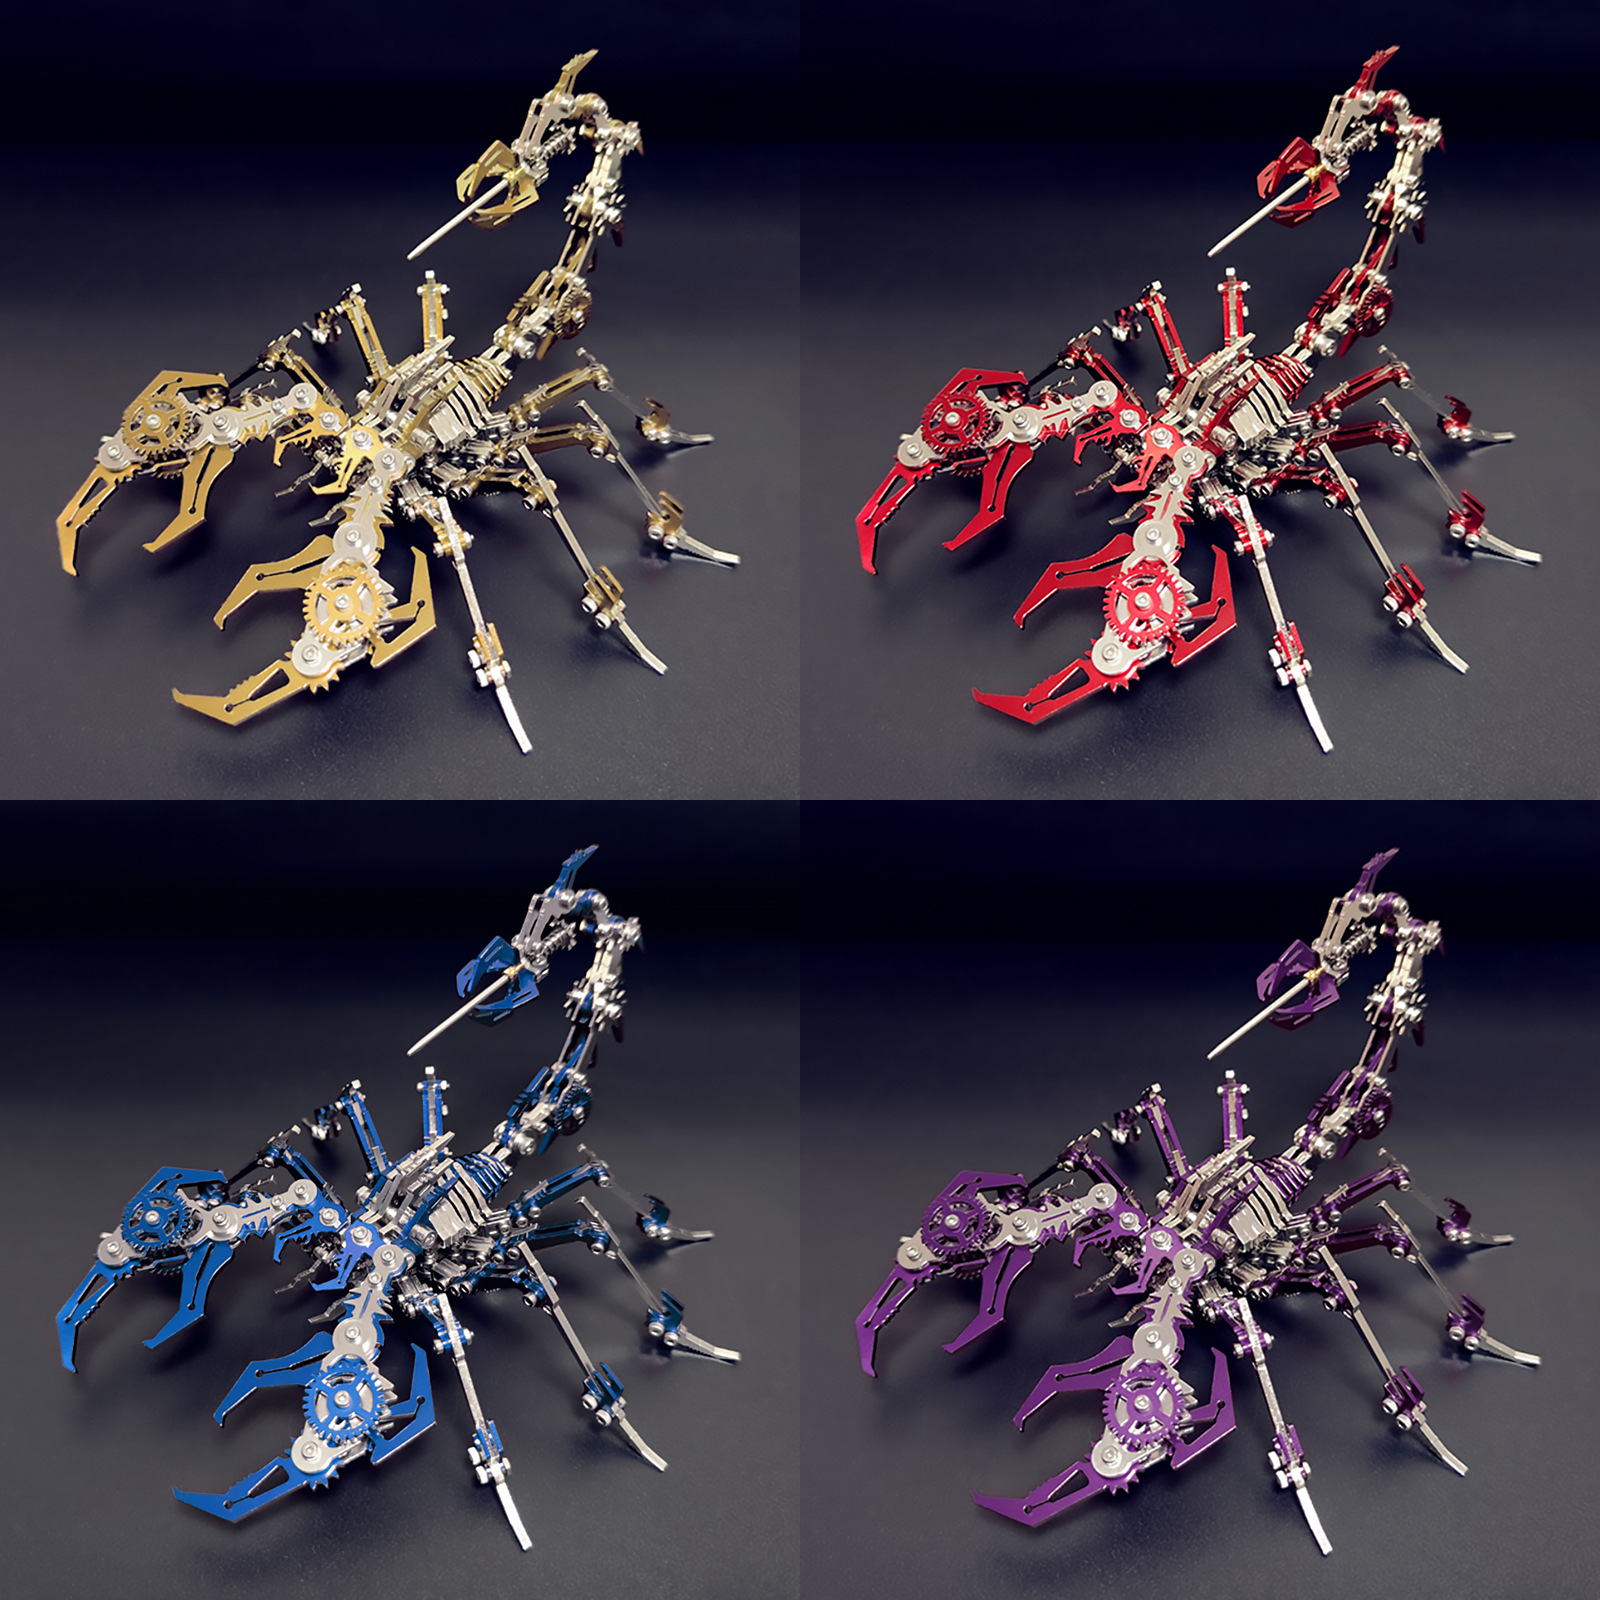 钢魔兽彩色蝎子王魔蝎3d金属拼装模型机械组装手工拼图高难度玩具